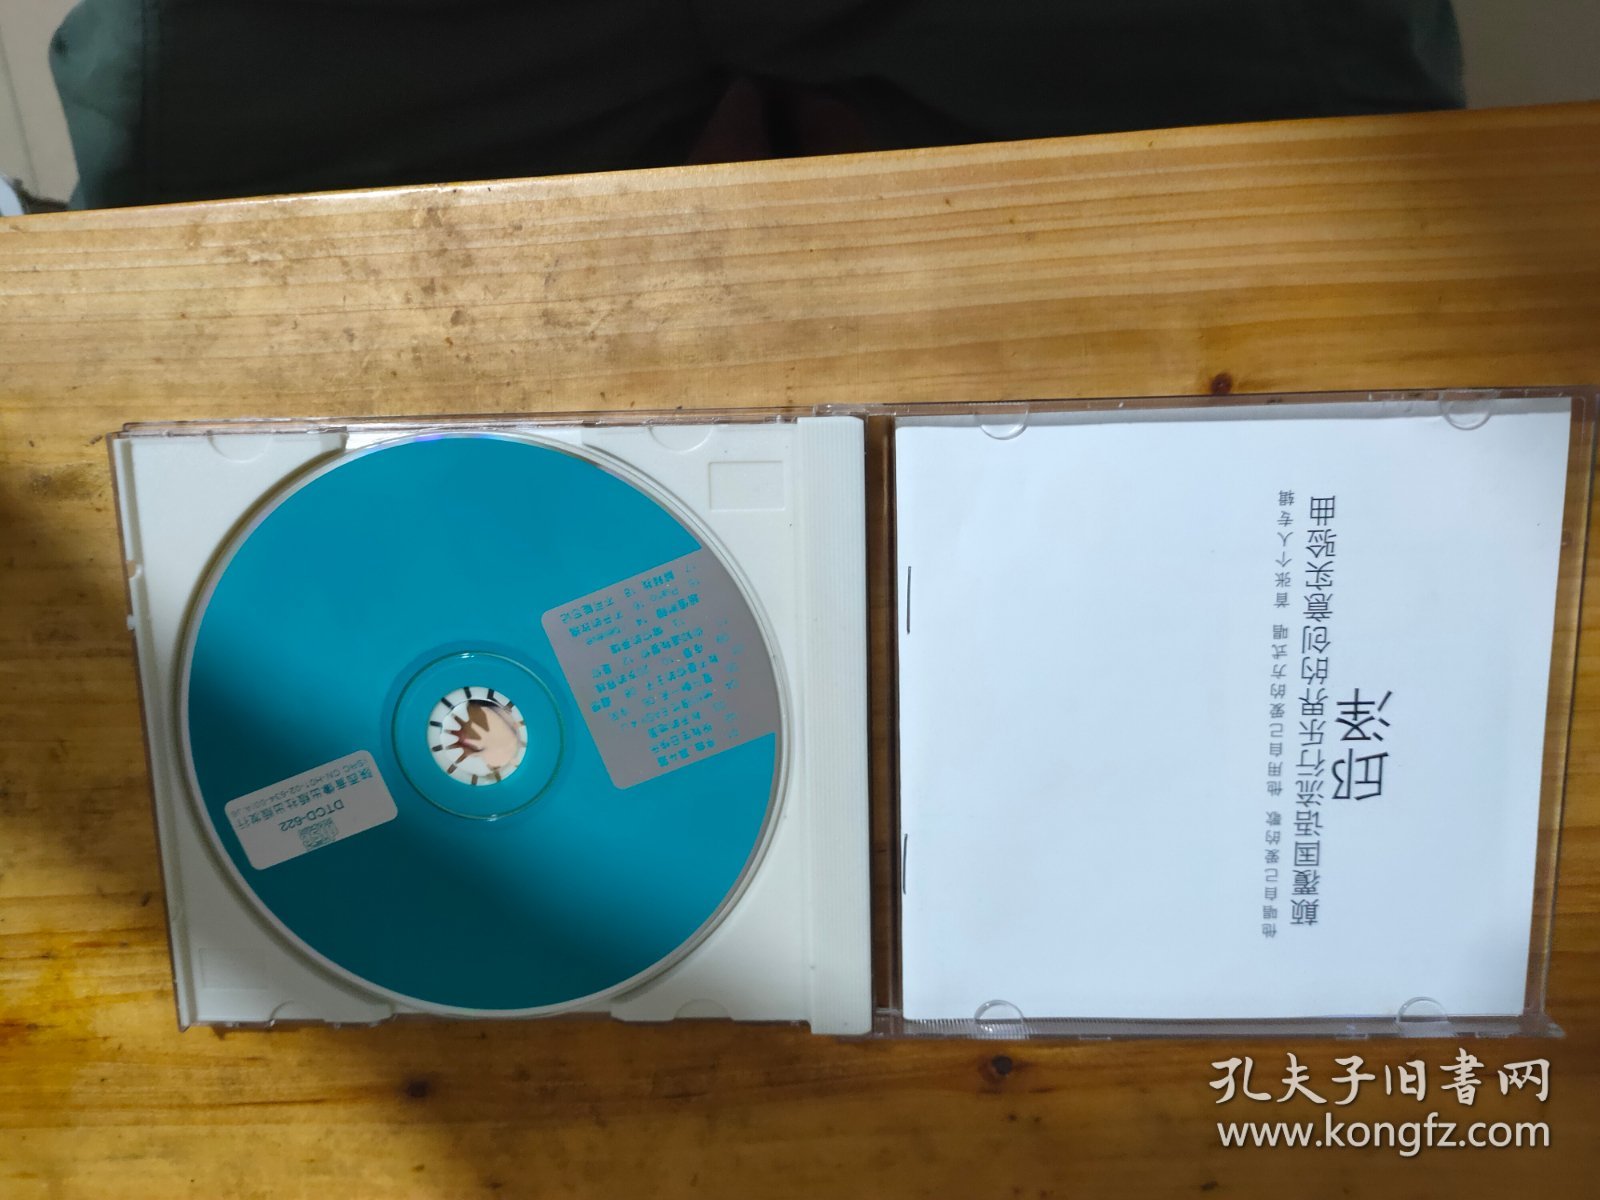 CD： 邱泽—— 同名专辑 盒装1碟，有歌词